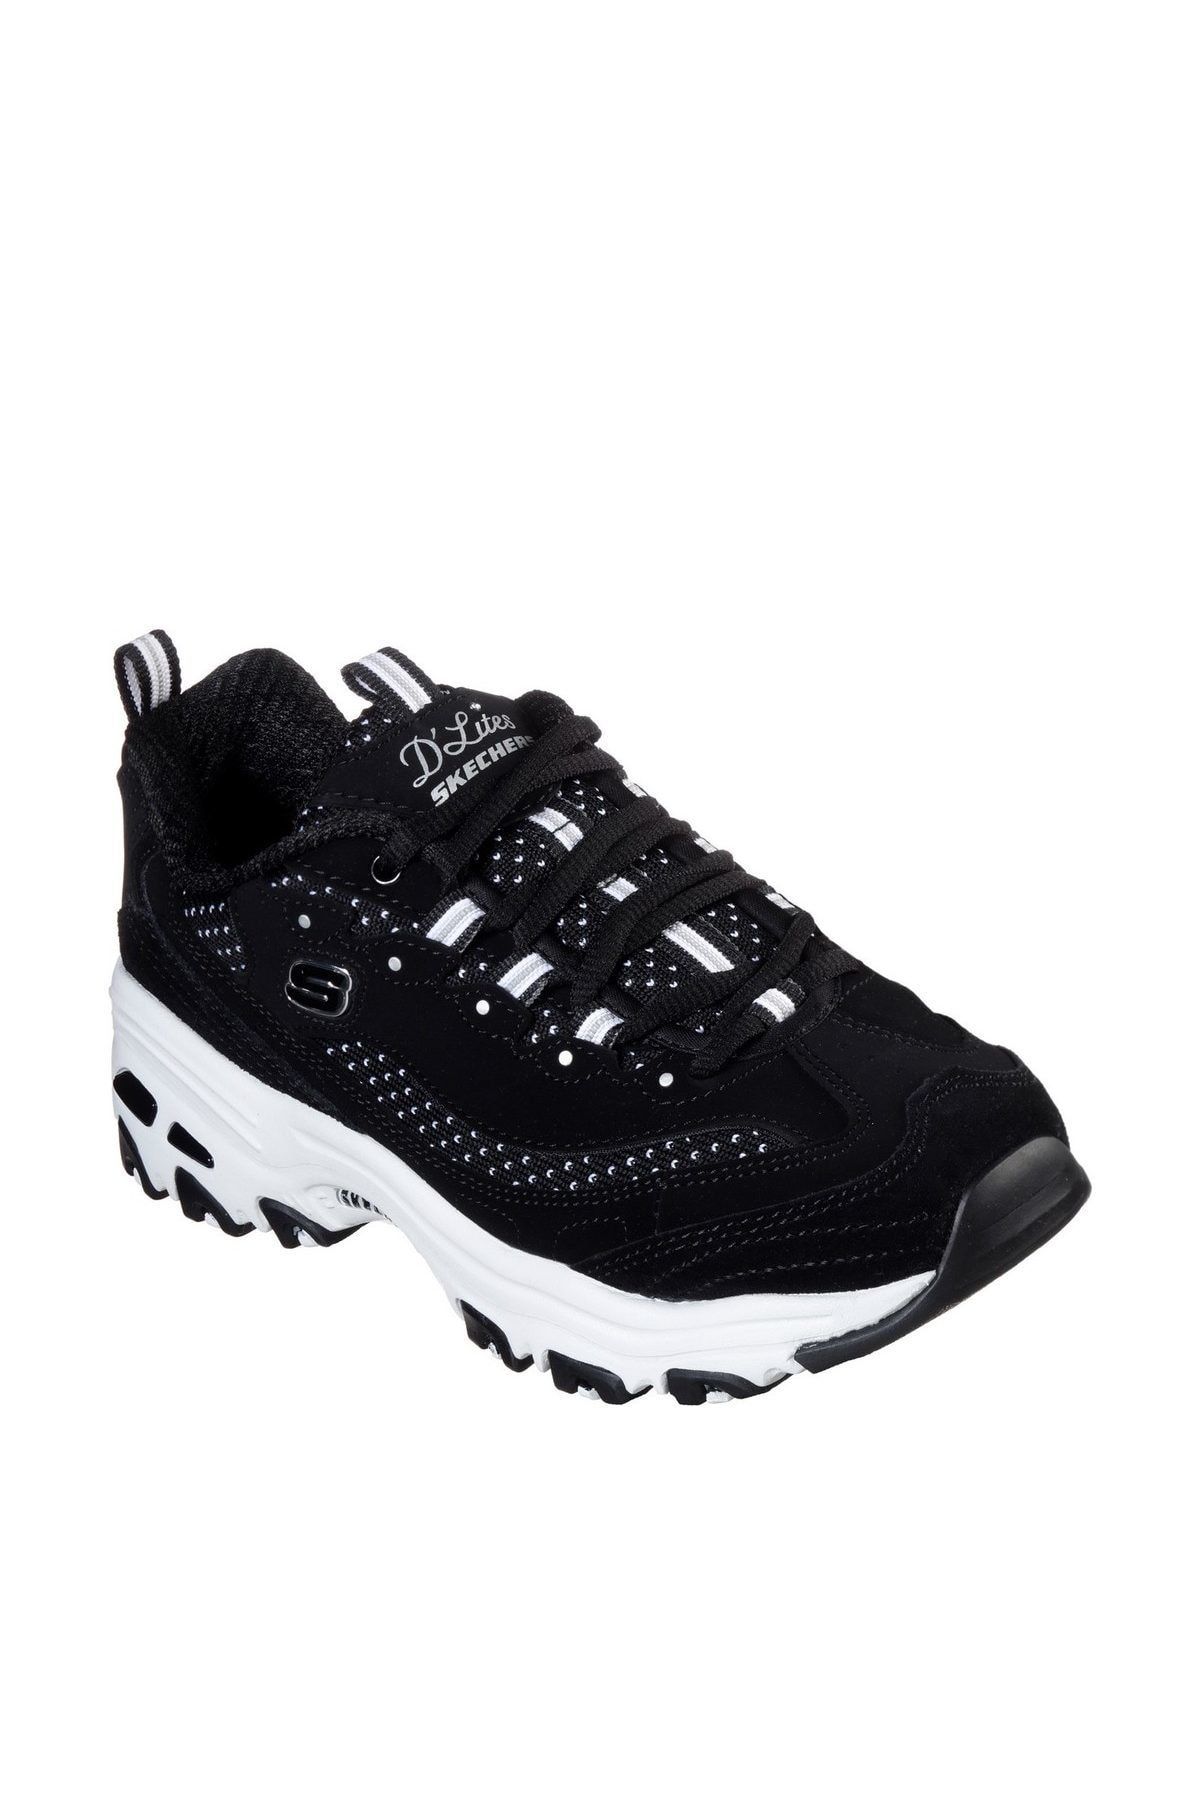 Skechers D'LİTES Siyah Sneakers - 13142 BKW Fiyatı, - Trendyol